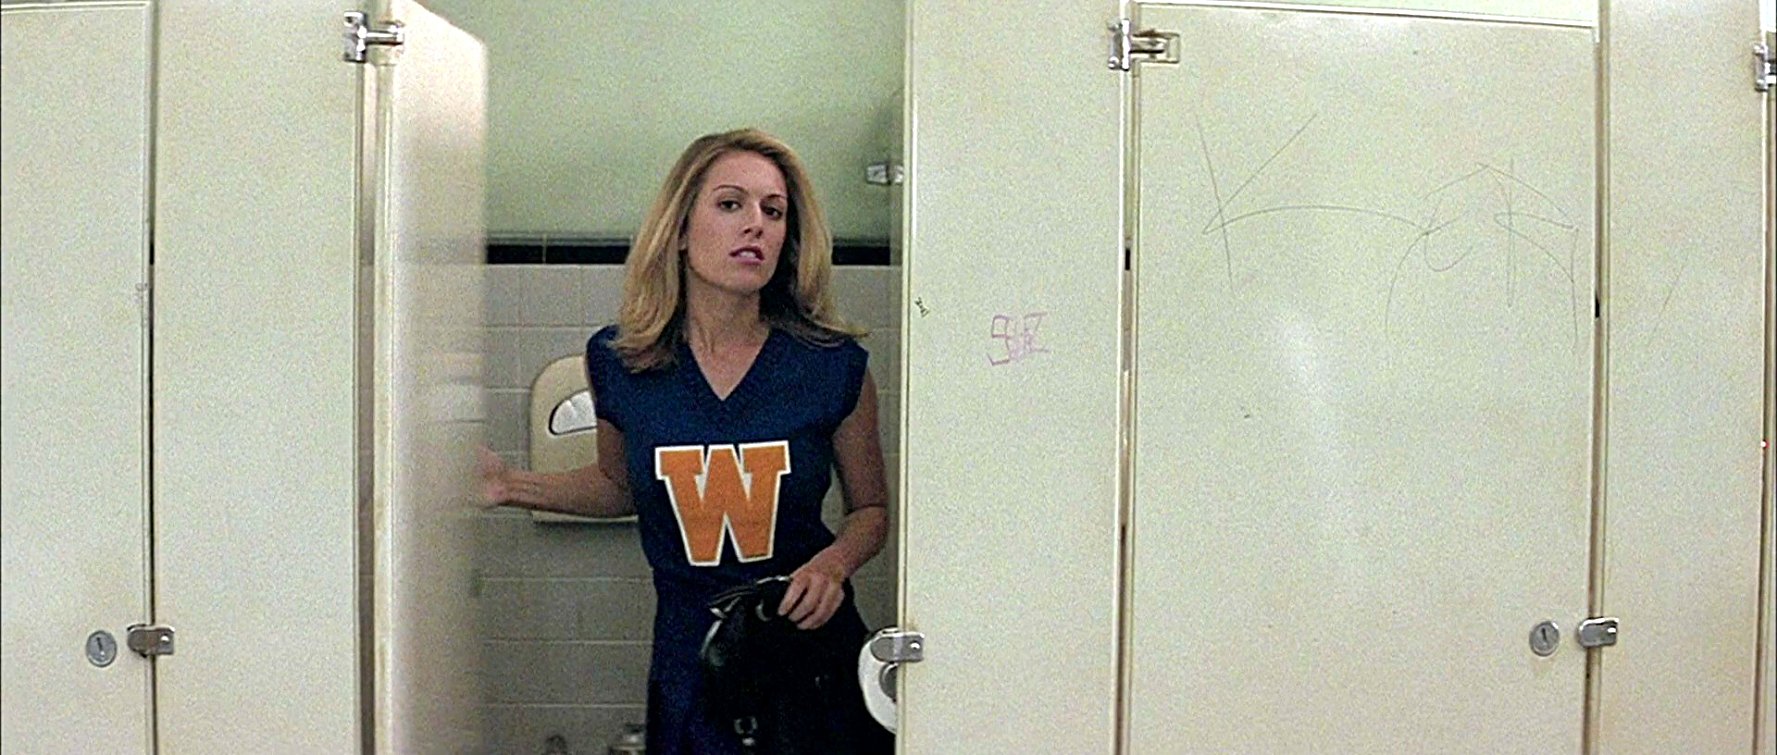 Cheerleader in Bathroom